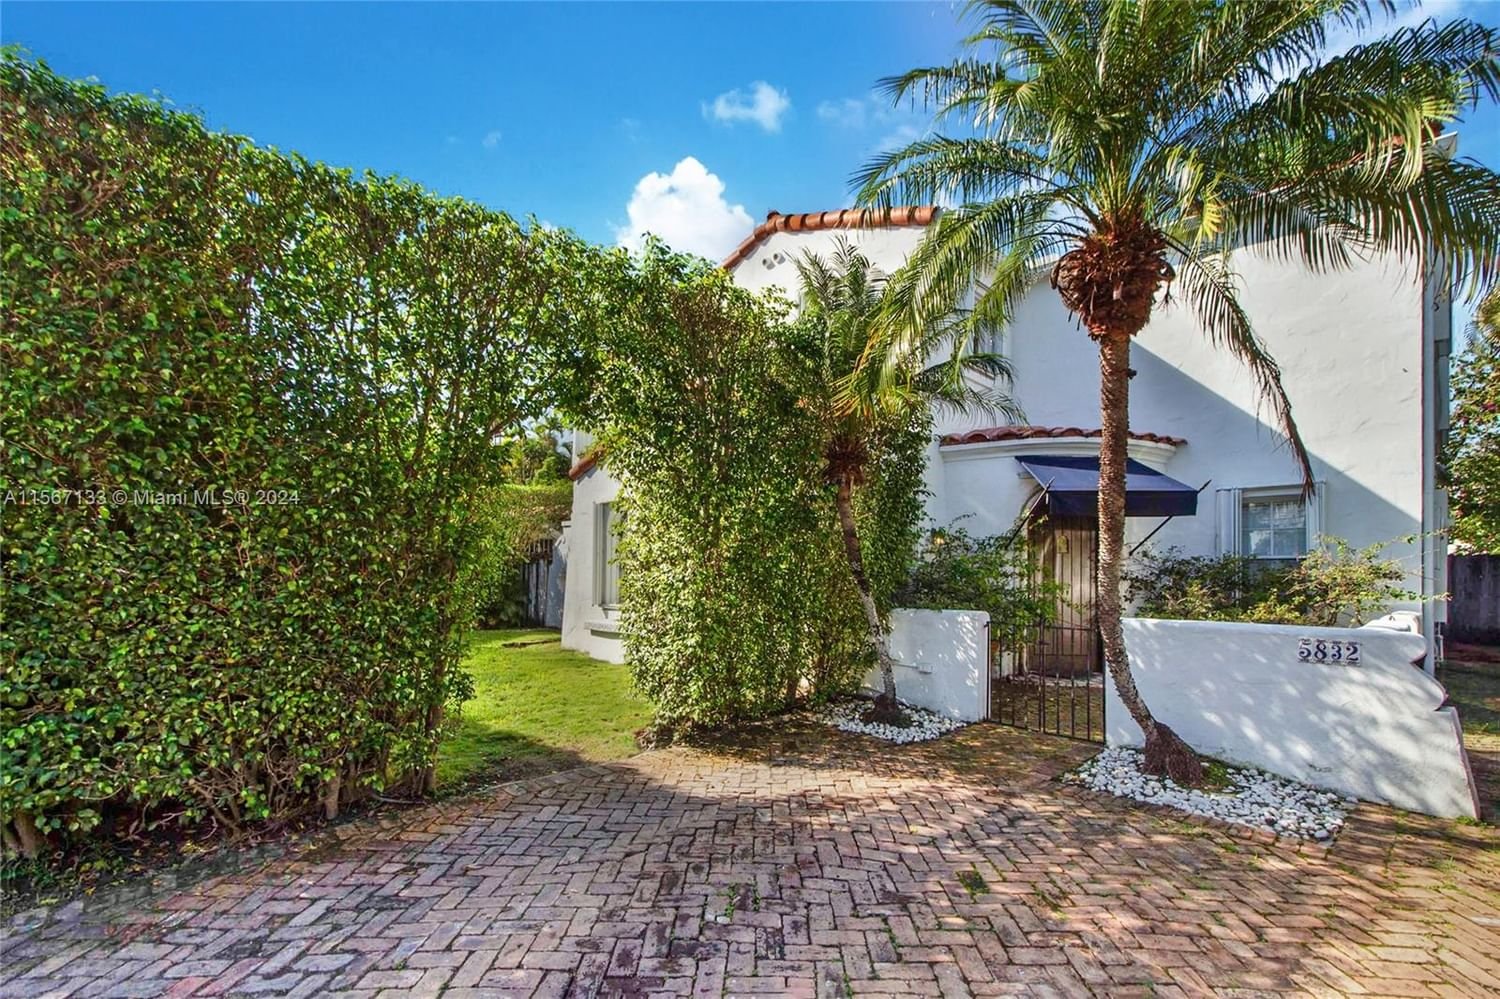 Real estate property located at 5832 Alton Rd, Miami-Dade County, LA GORCE GOLF SUB, Miami Beach, FL